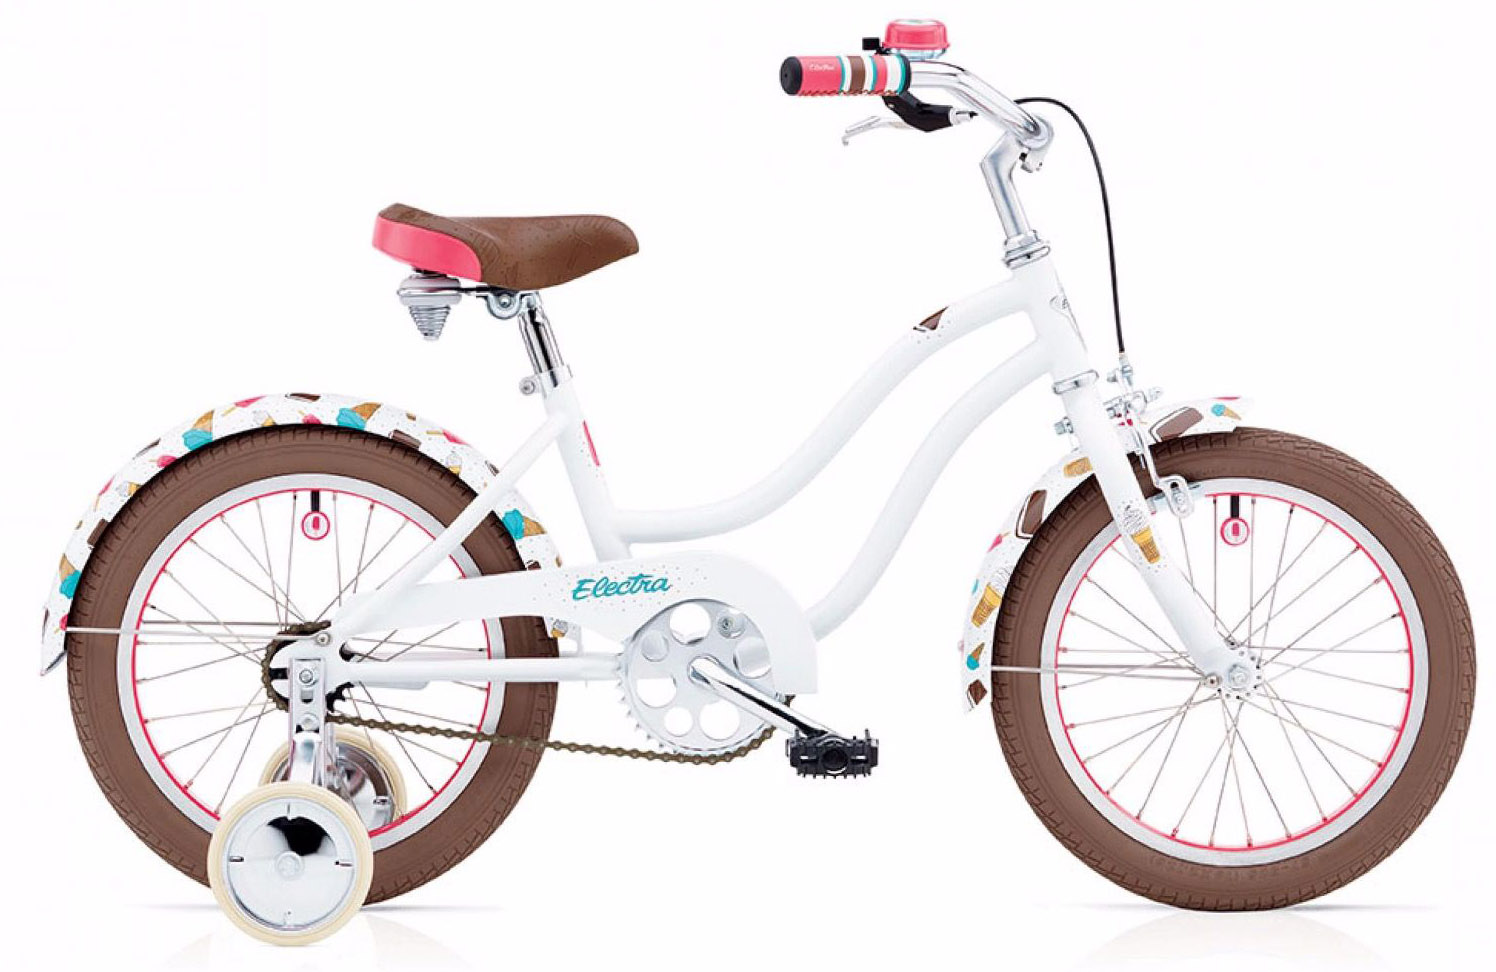  Отзывы о Детском велосипеде Electra Soft Serve 16 2020